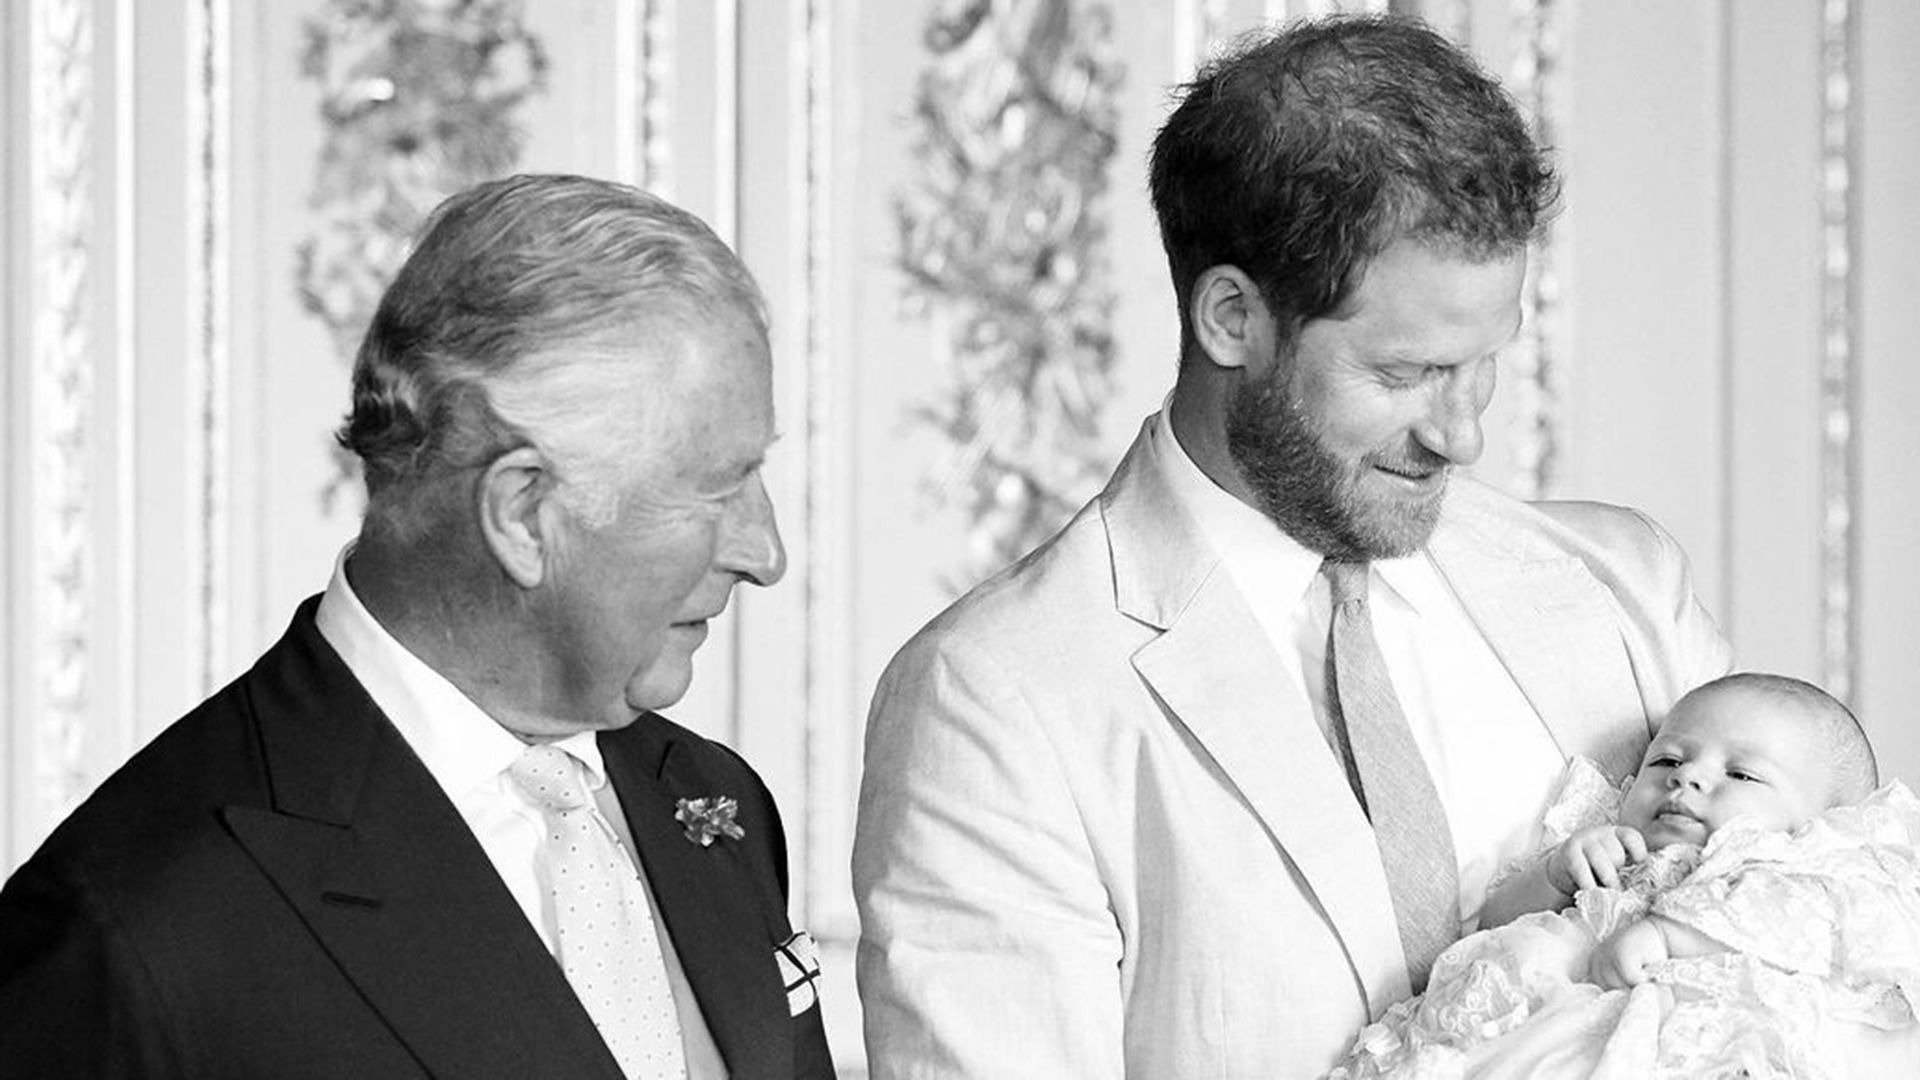 Carles III, preocupat pels seus nets Archie i Lilibet, no estan bé